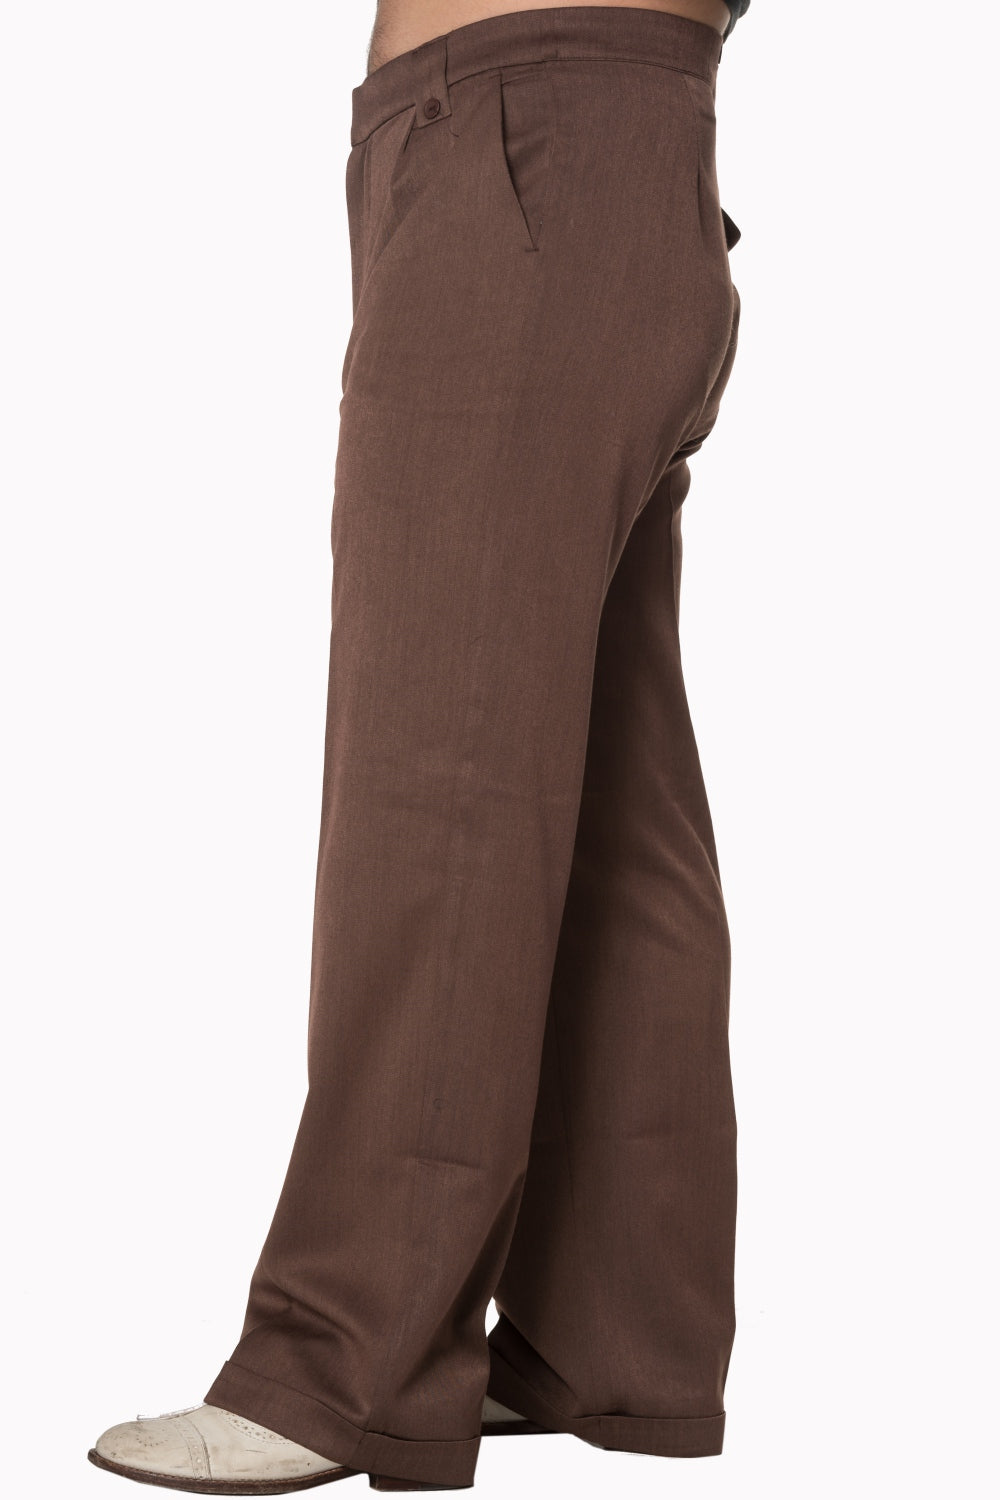 1940's Men's Wide Leg Trousers Pattern by Evadress - Etsy